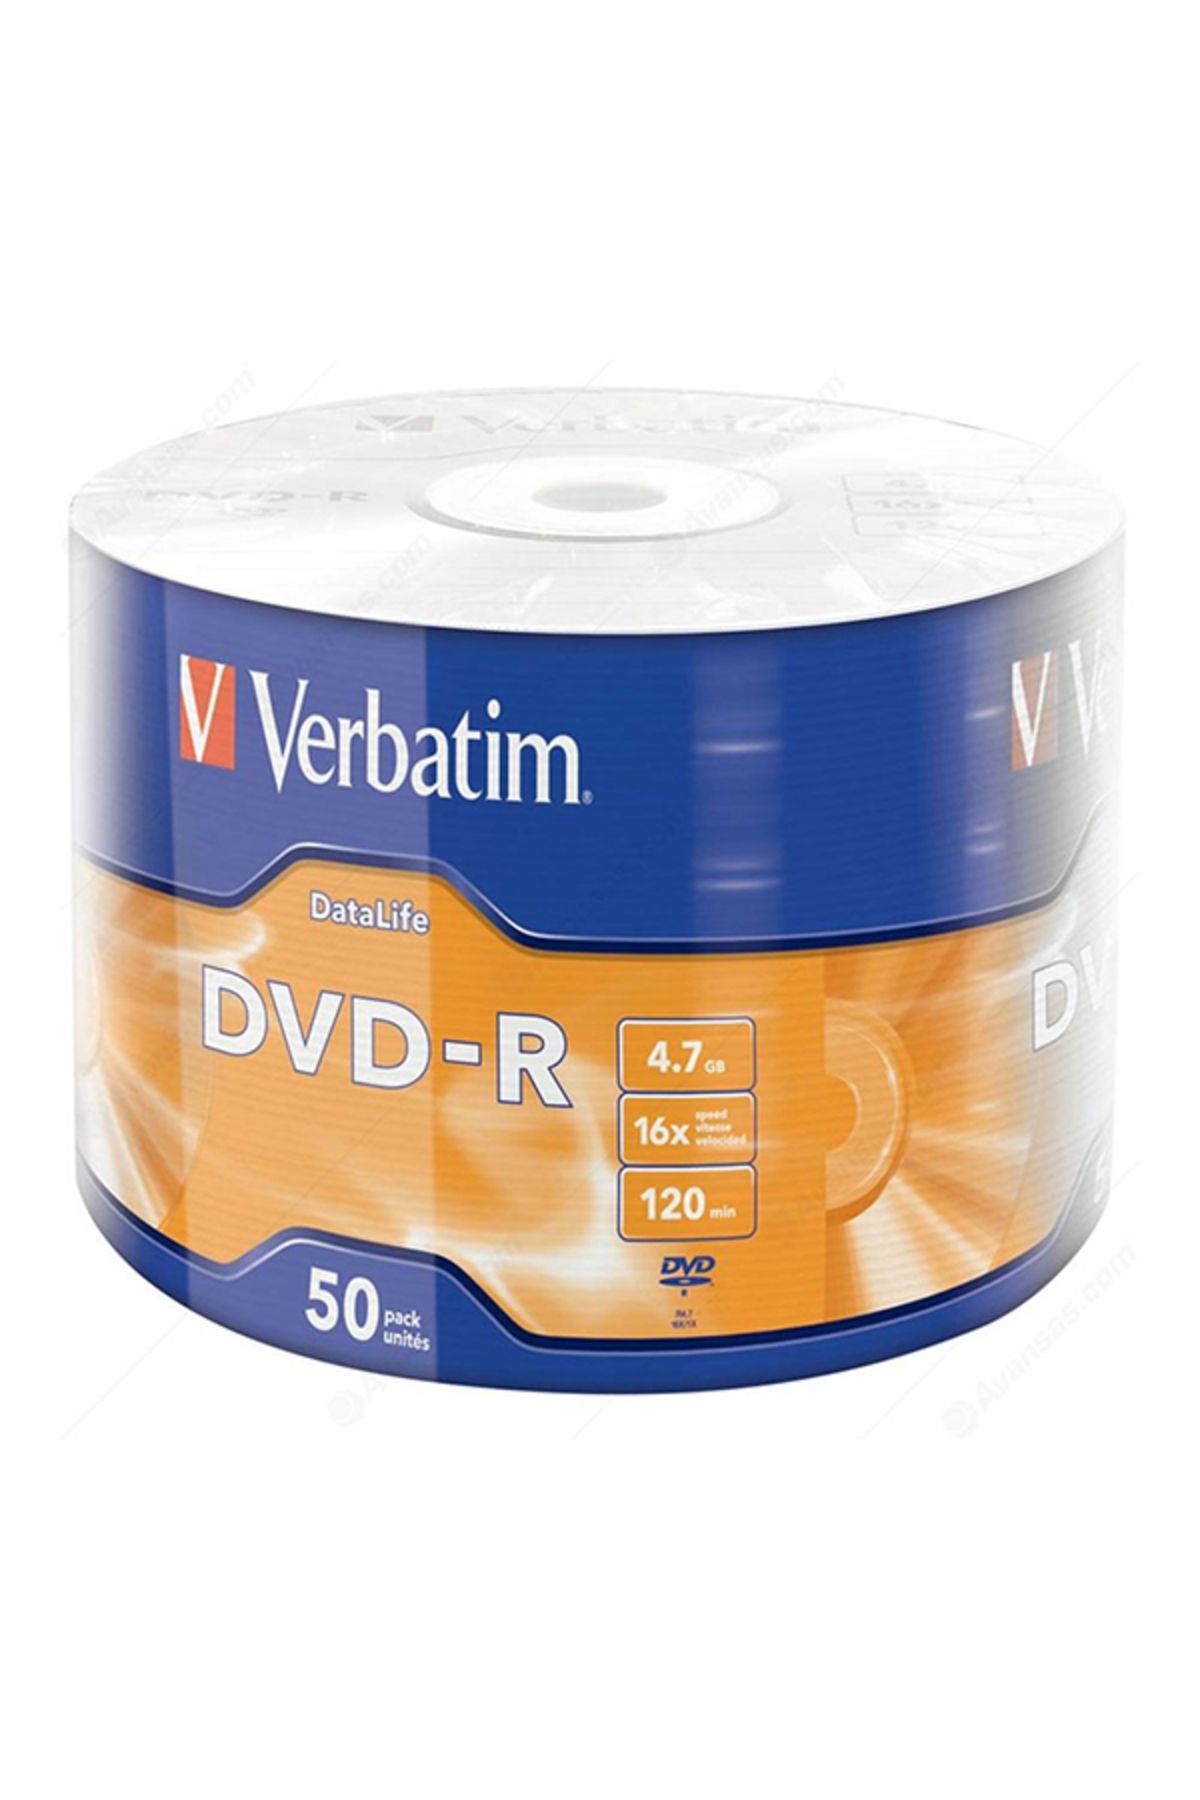 xmldünyası VERBATİM DVD-R 4.7GB 16X 120DK 50Lİ PAKET FİYAT